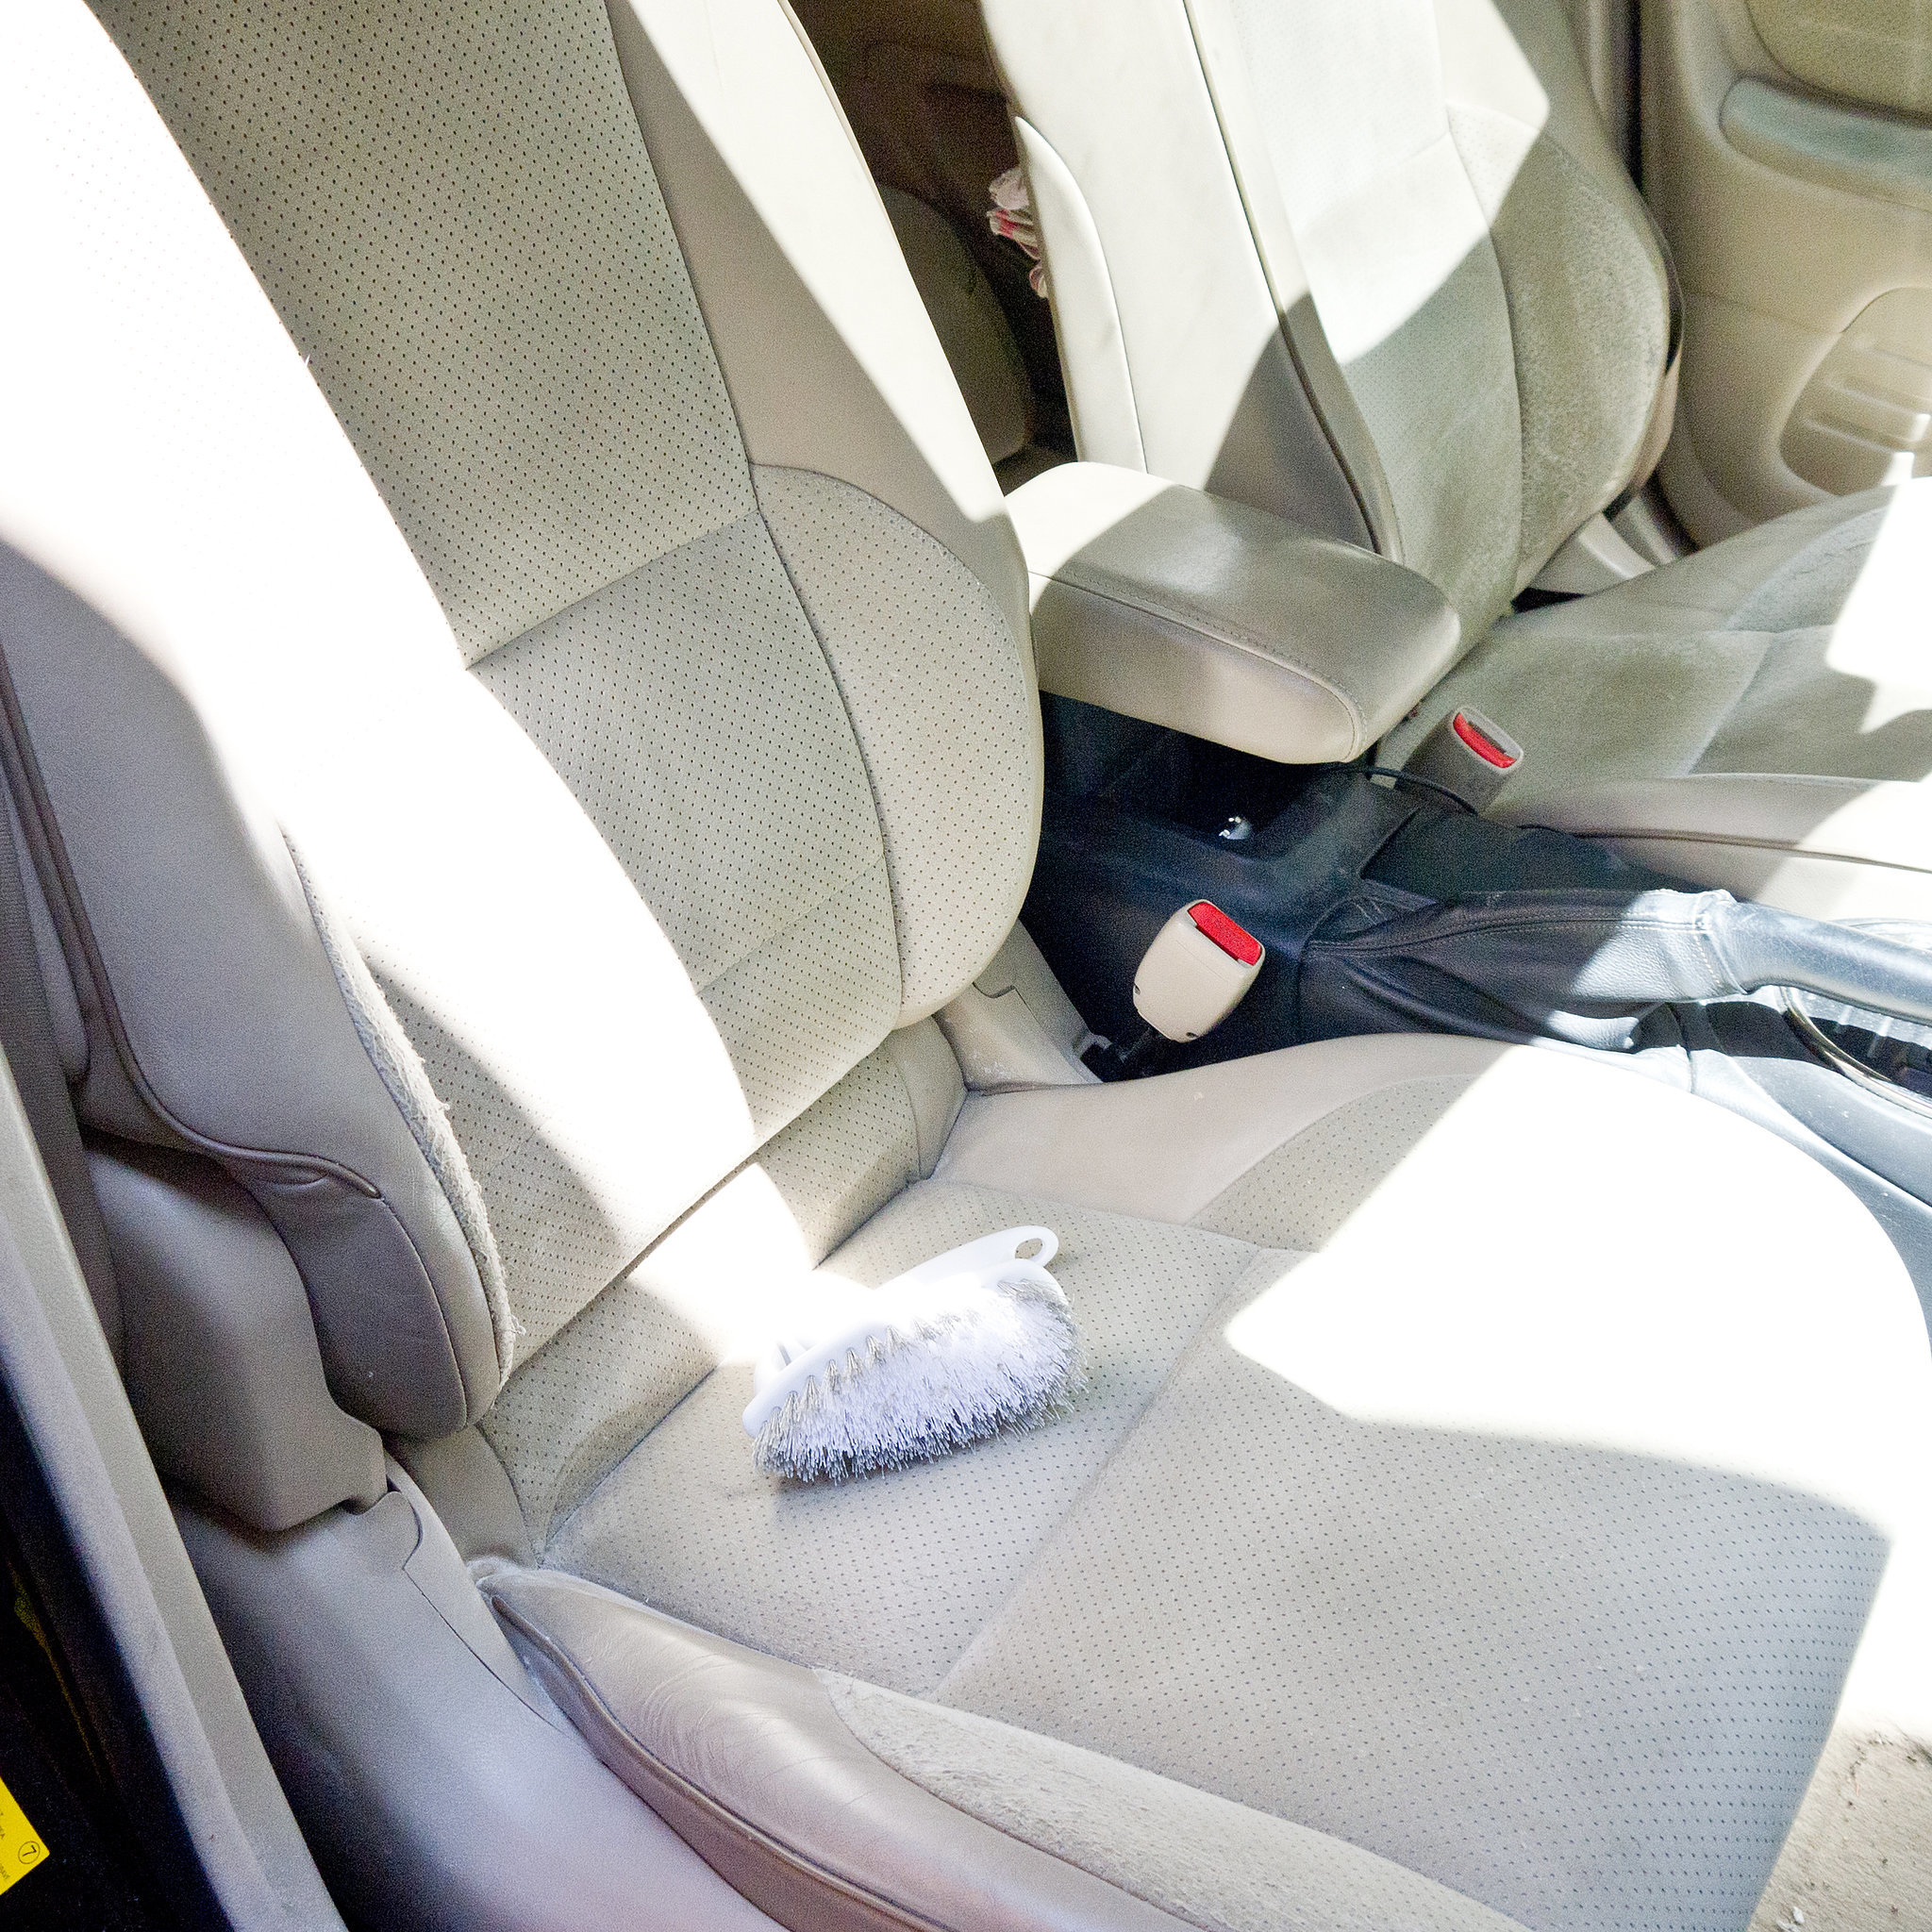 Узнайте, как очистить автомобильные сиденья всего двумя ингредиентами